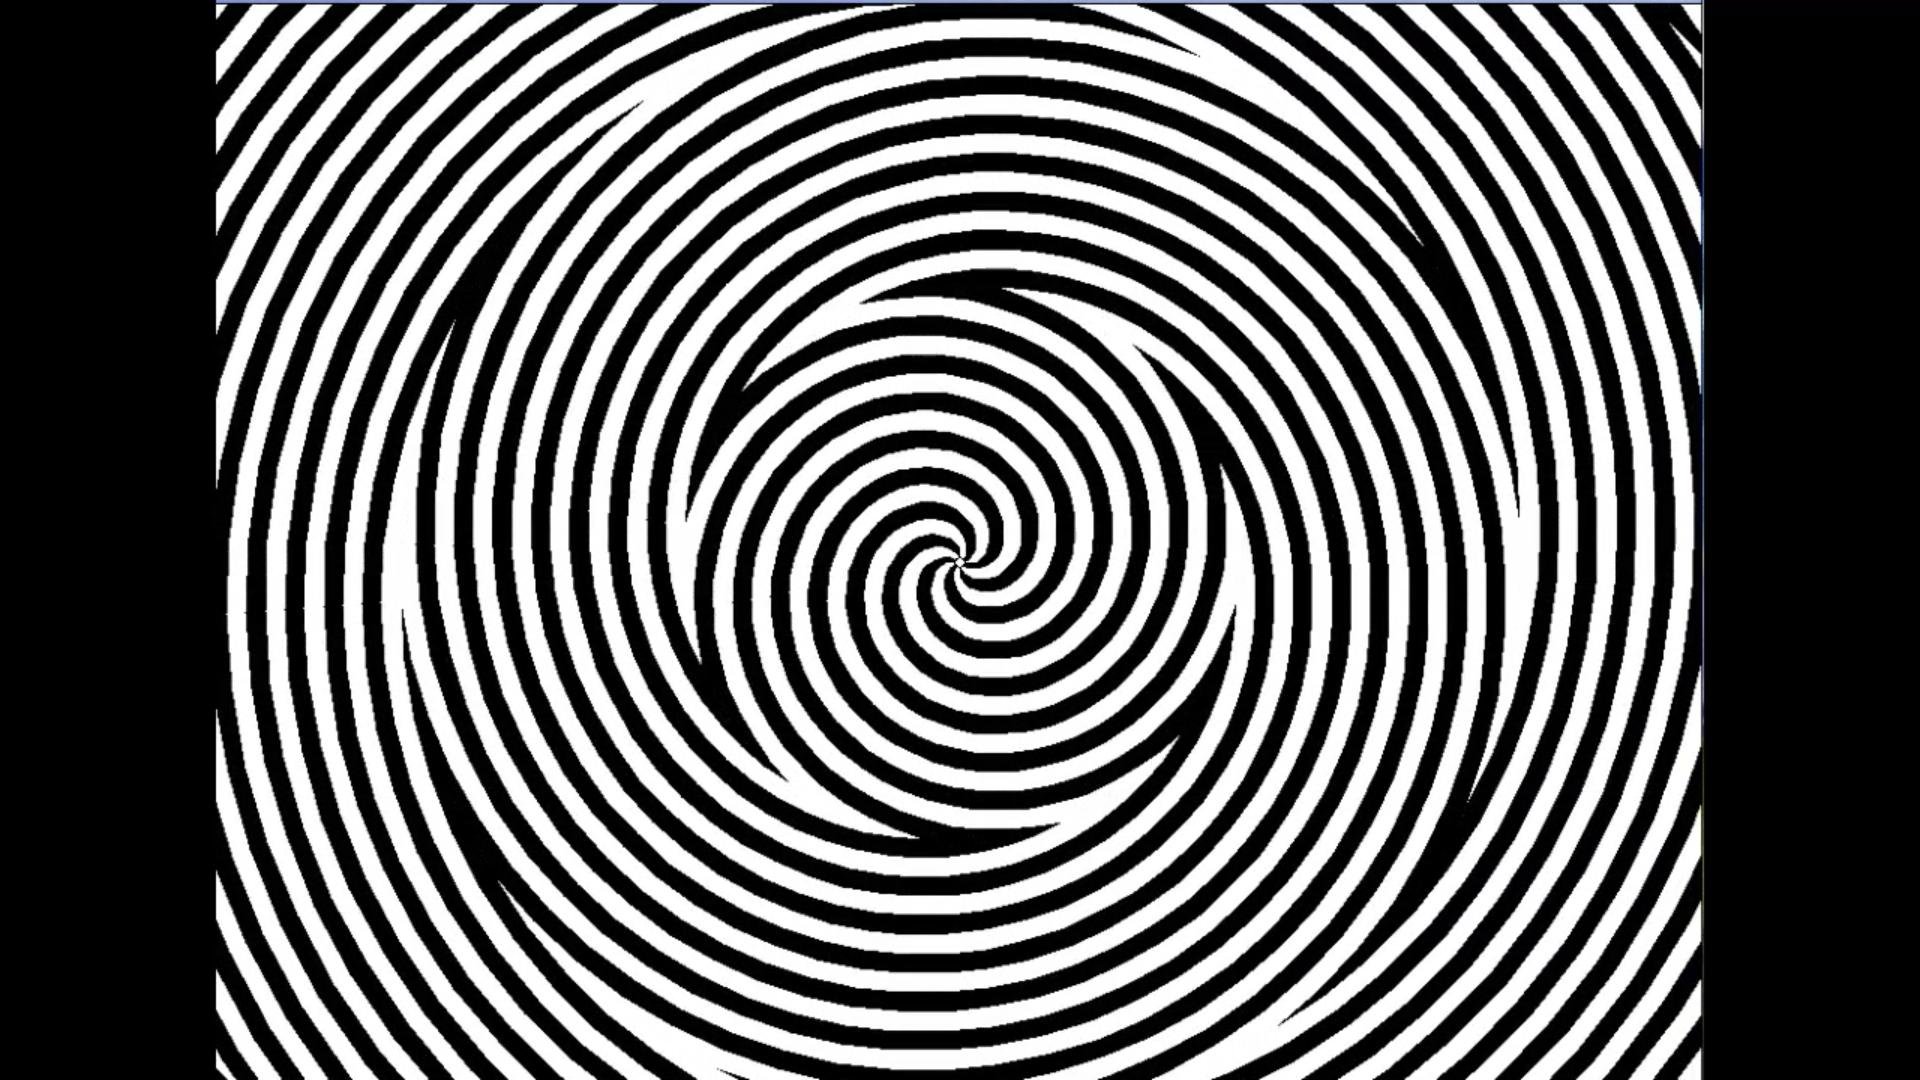 Uncle hypnosis. Гипноз. Гипнотическая спираль. Гипнотические картинки. Оптические иллюзии.